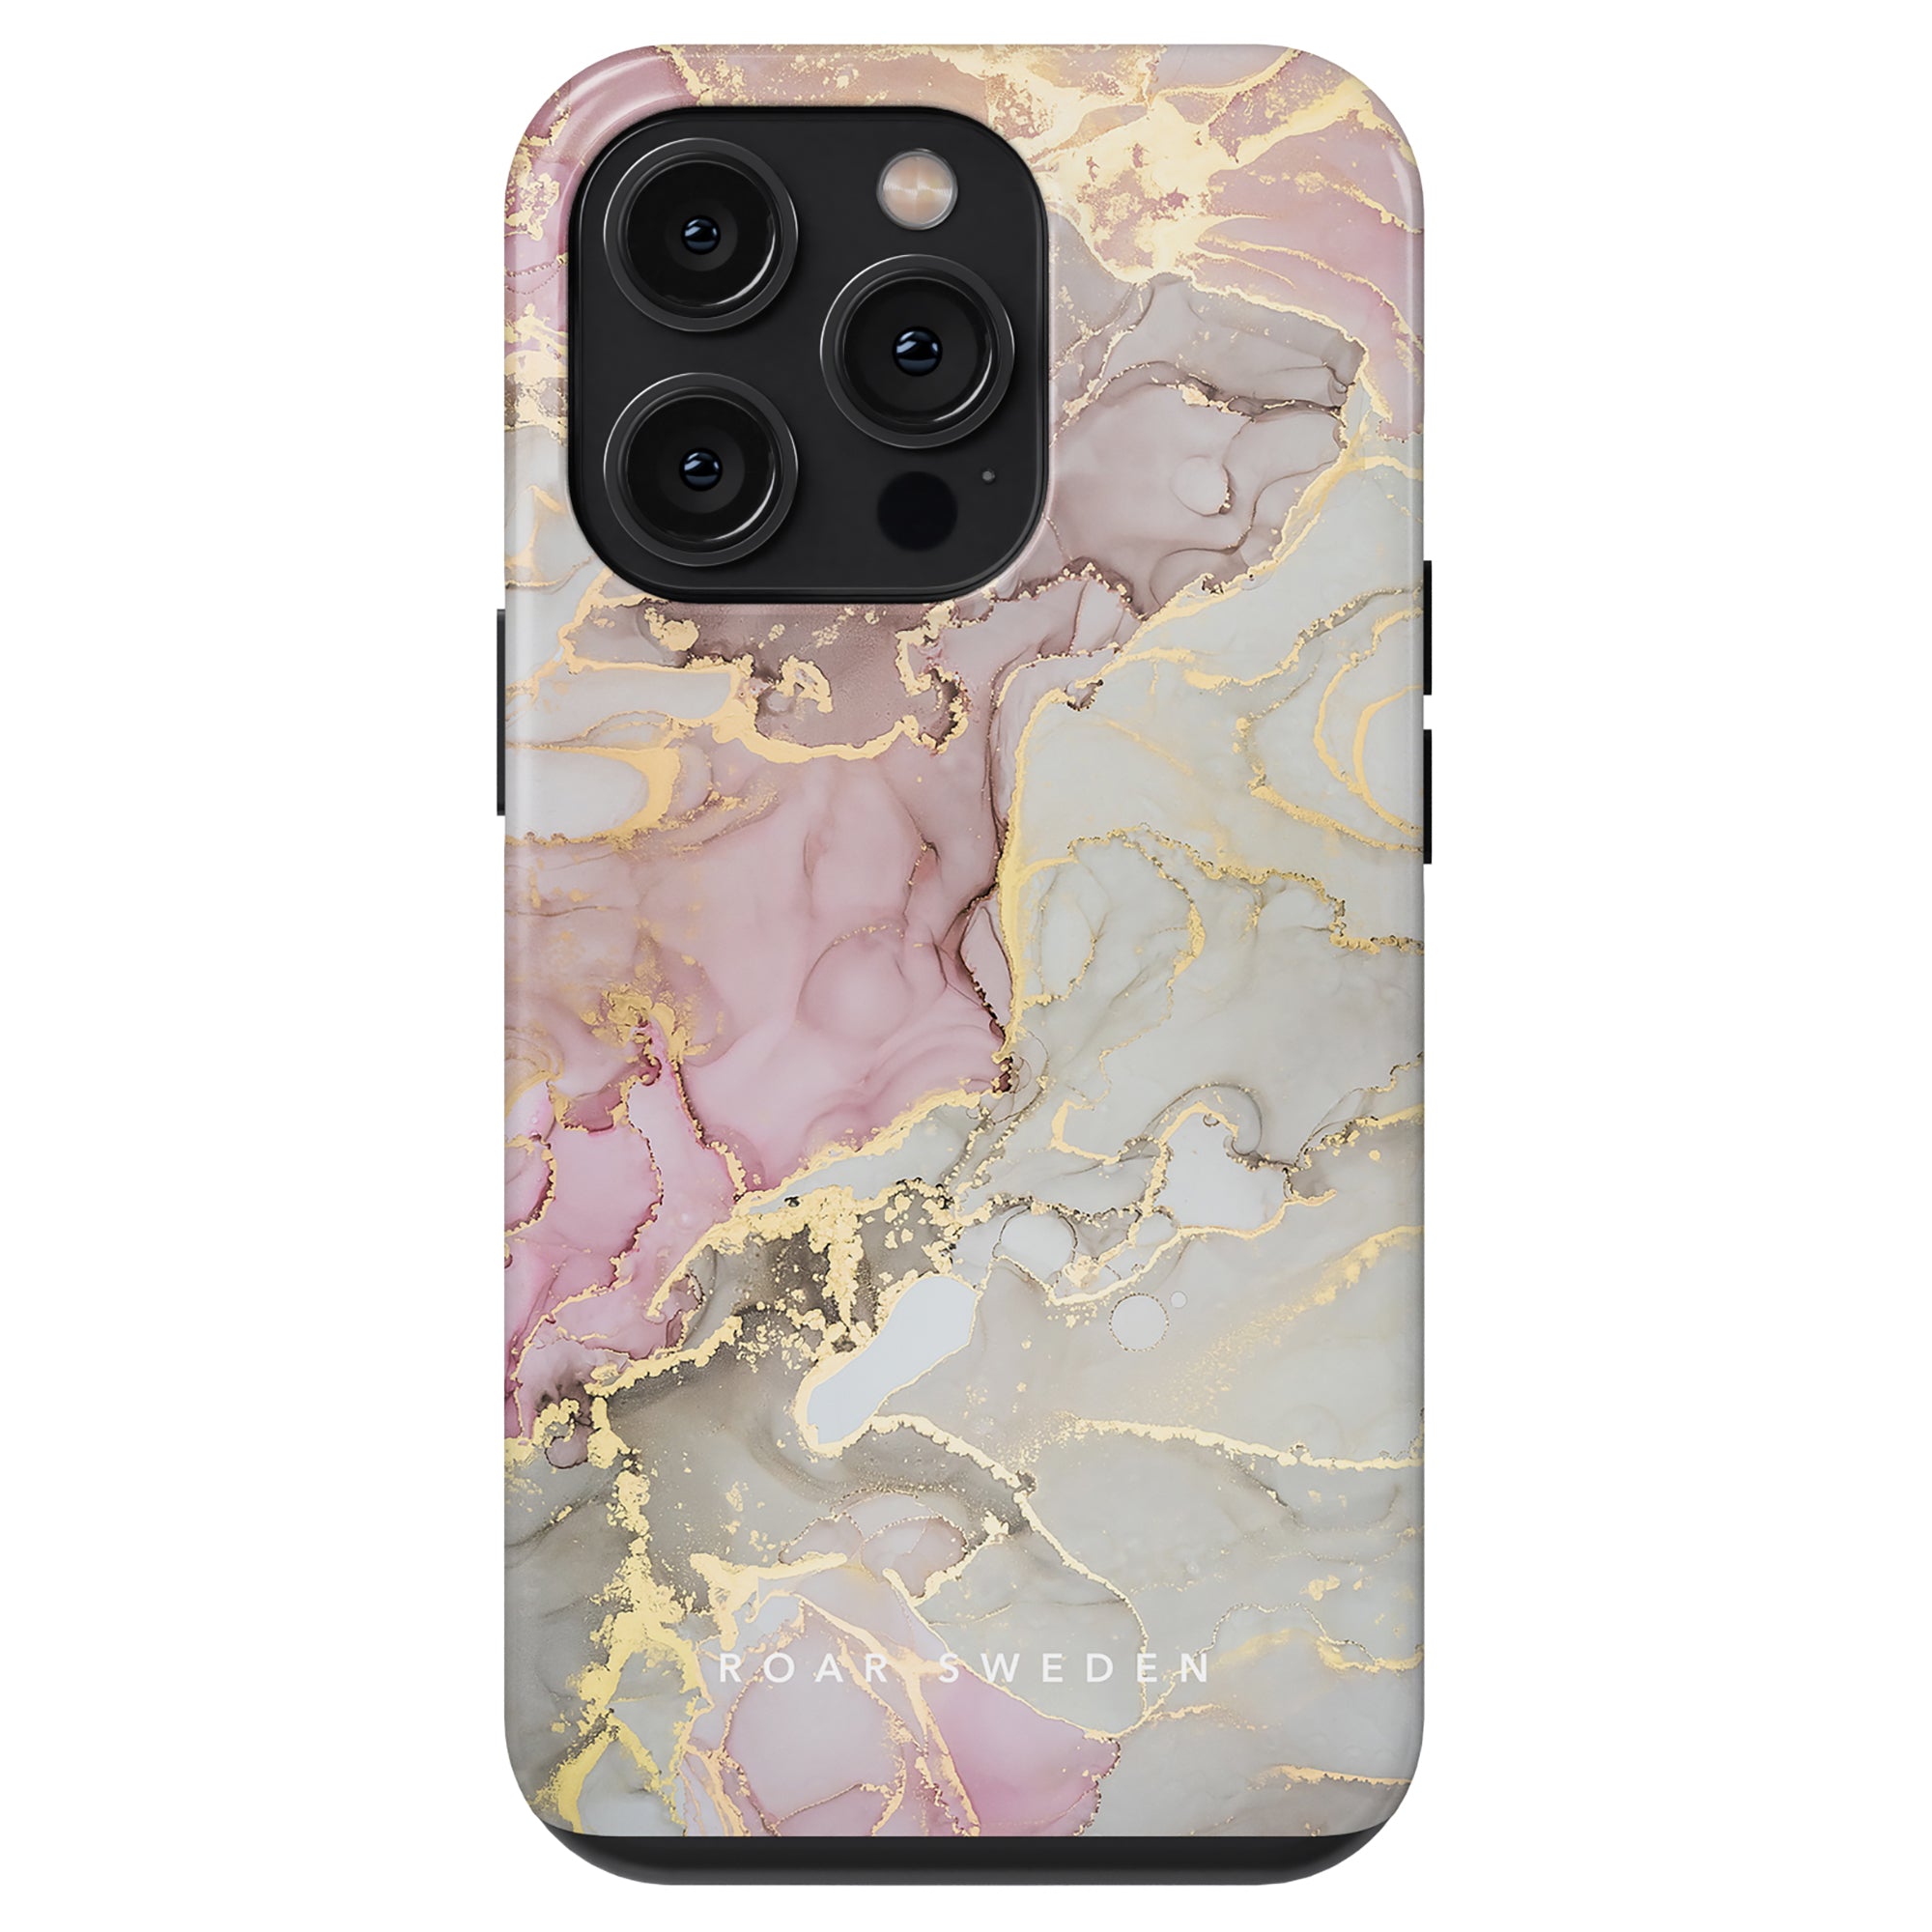 Ett Glitter - Tufft fodral telefonfodral för iphone 11. Detta telefonfodral är elegant och hållbart med en vacker design i rosa och guldmarmor som ger en touch av elegans till din iPhone från Printeers.